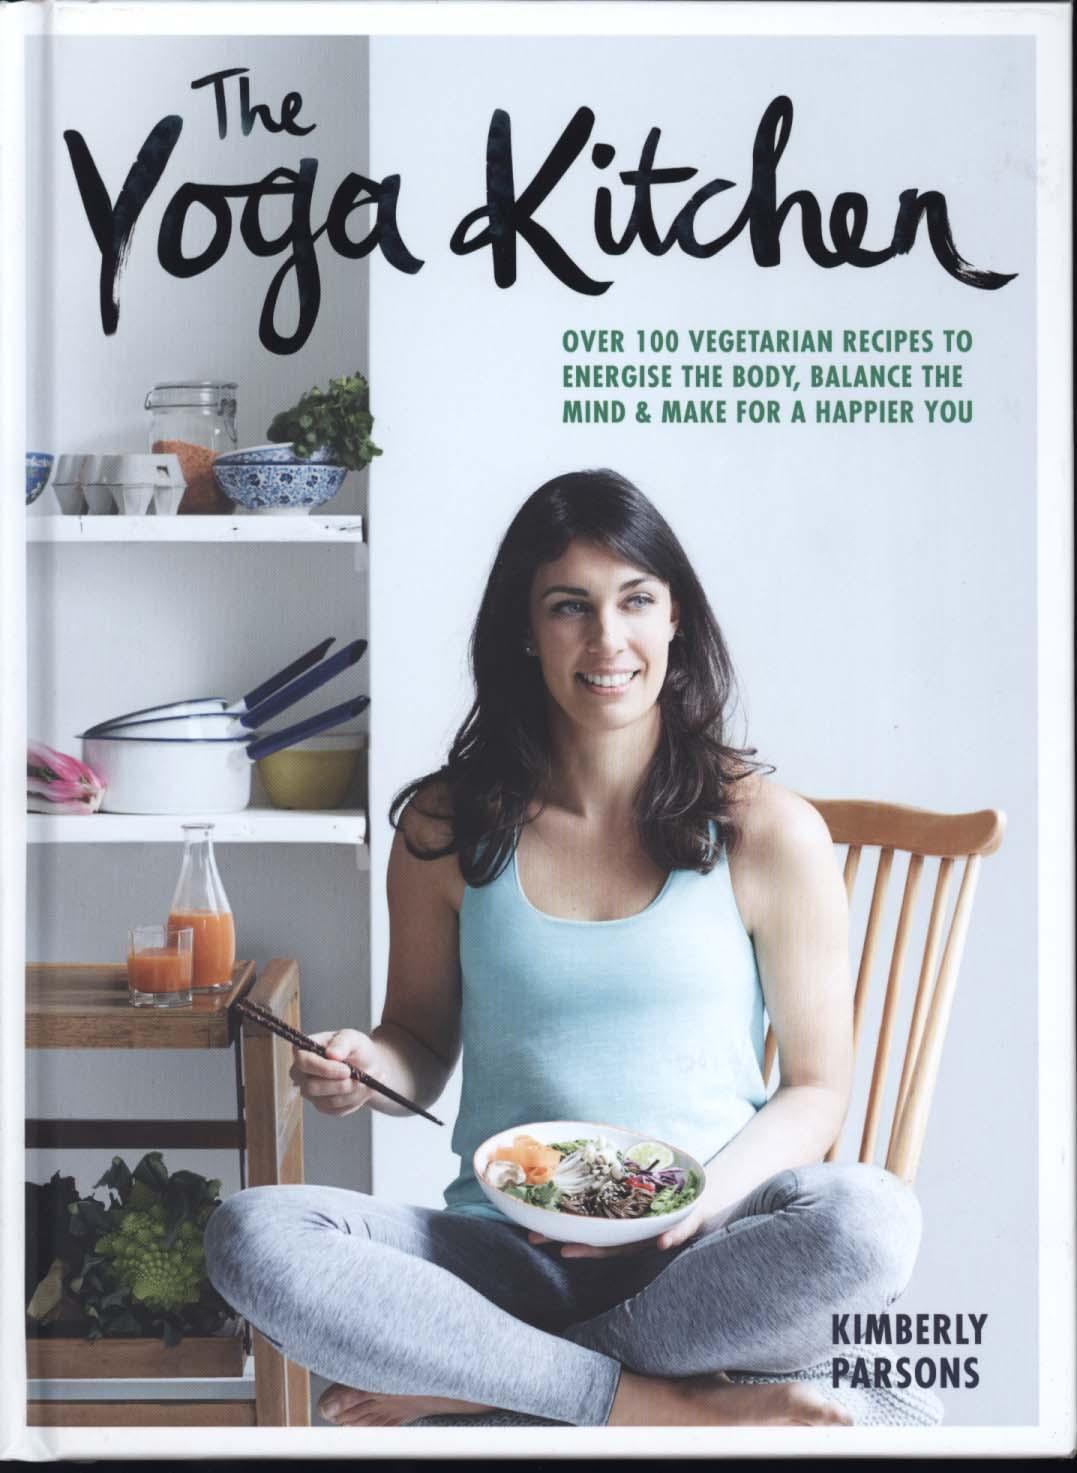 Yoga Kitchen